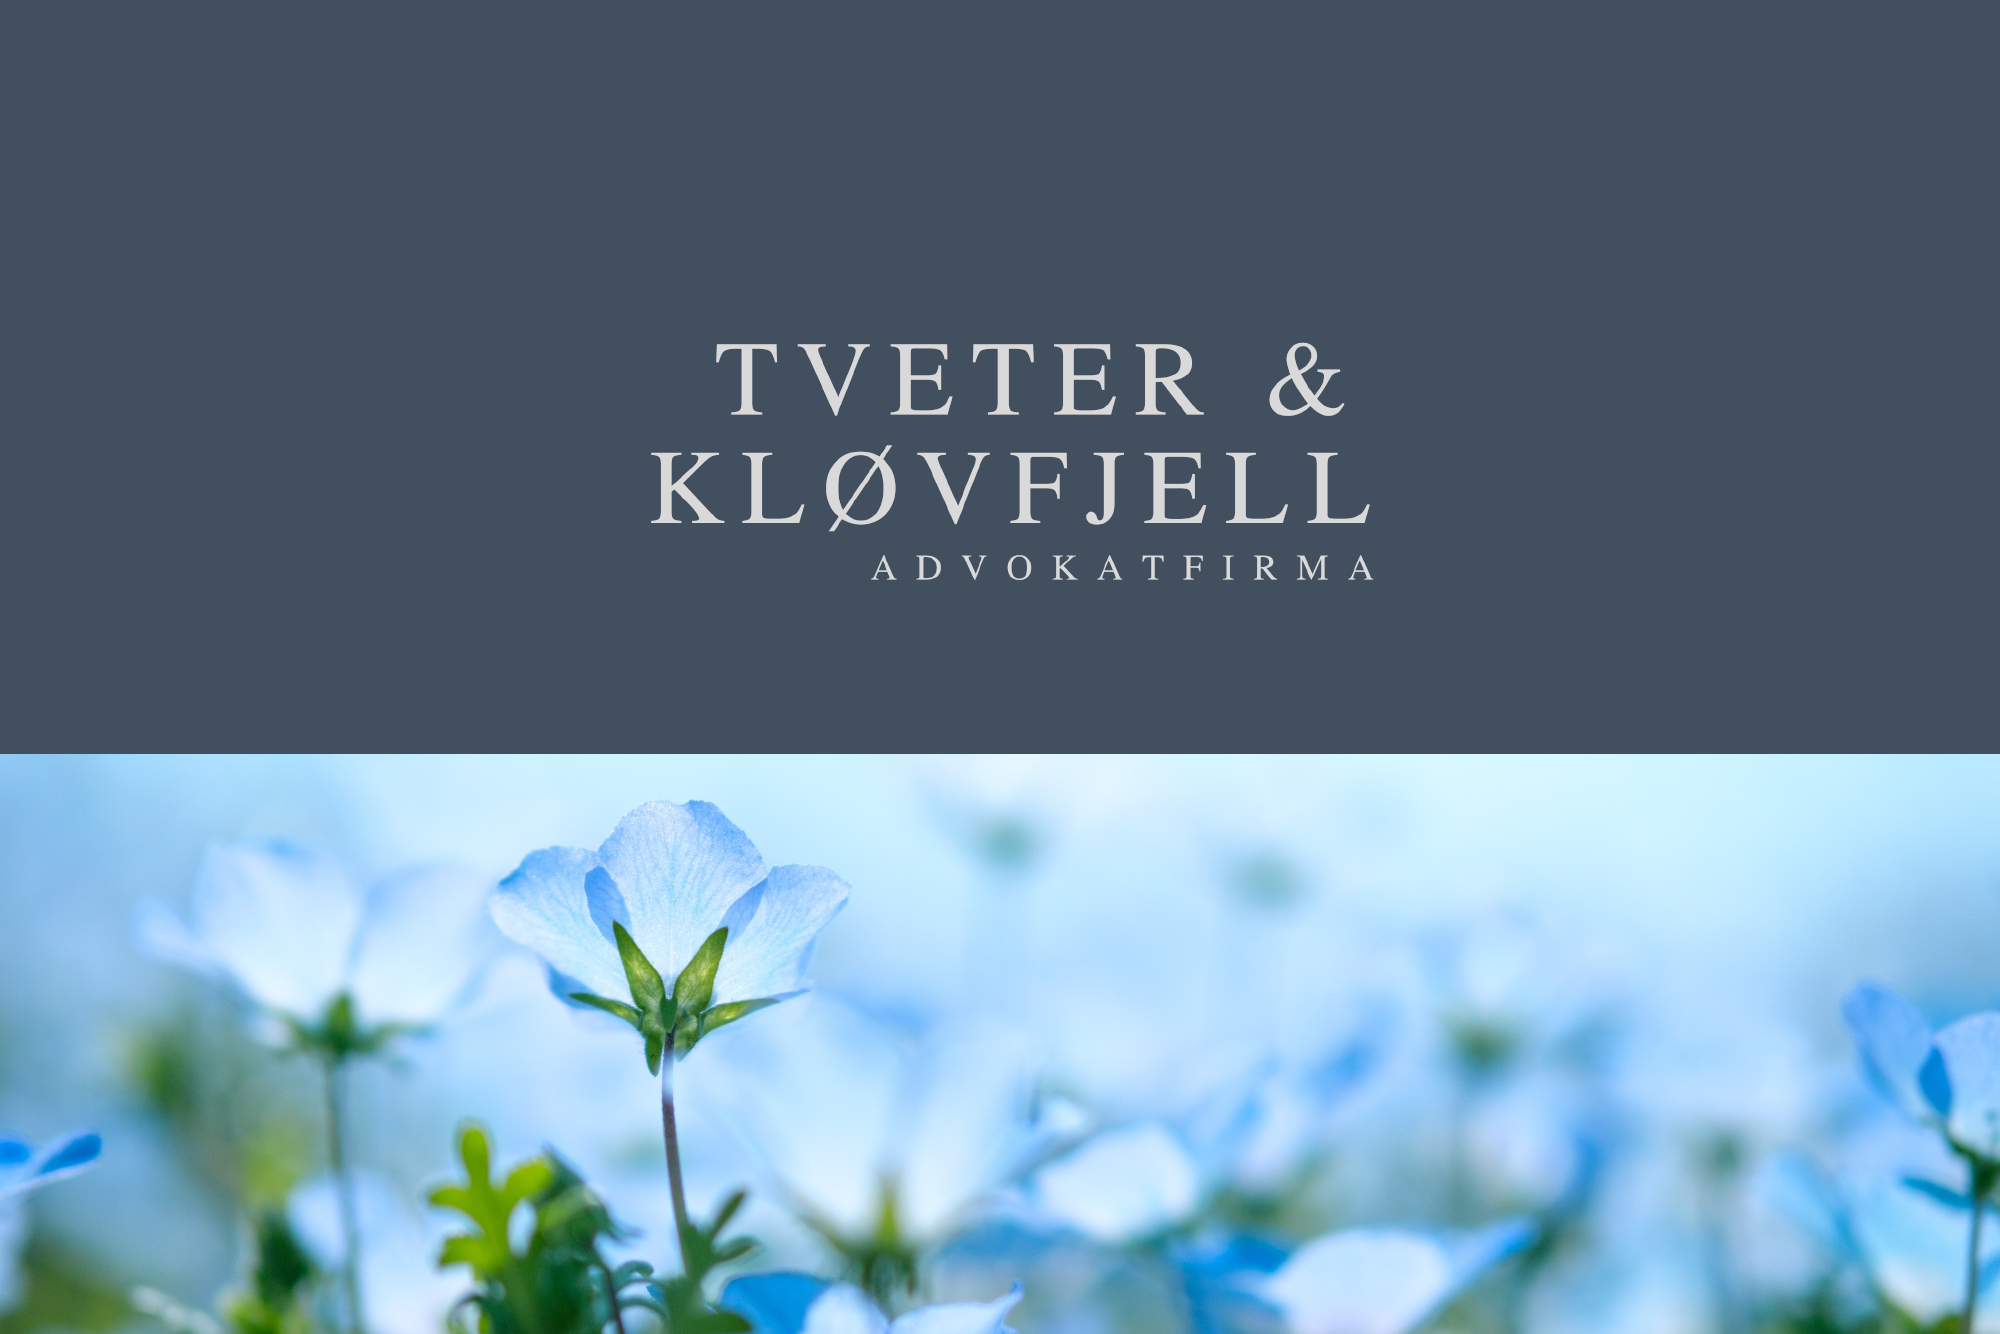 Plakat med Tveter og Kløvfjell-logo og bilde av blåklokker under